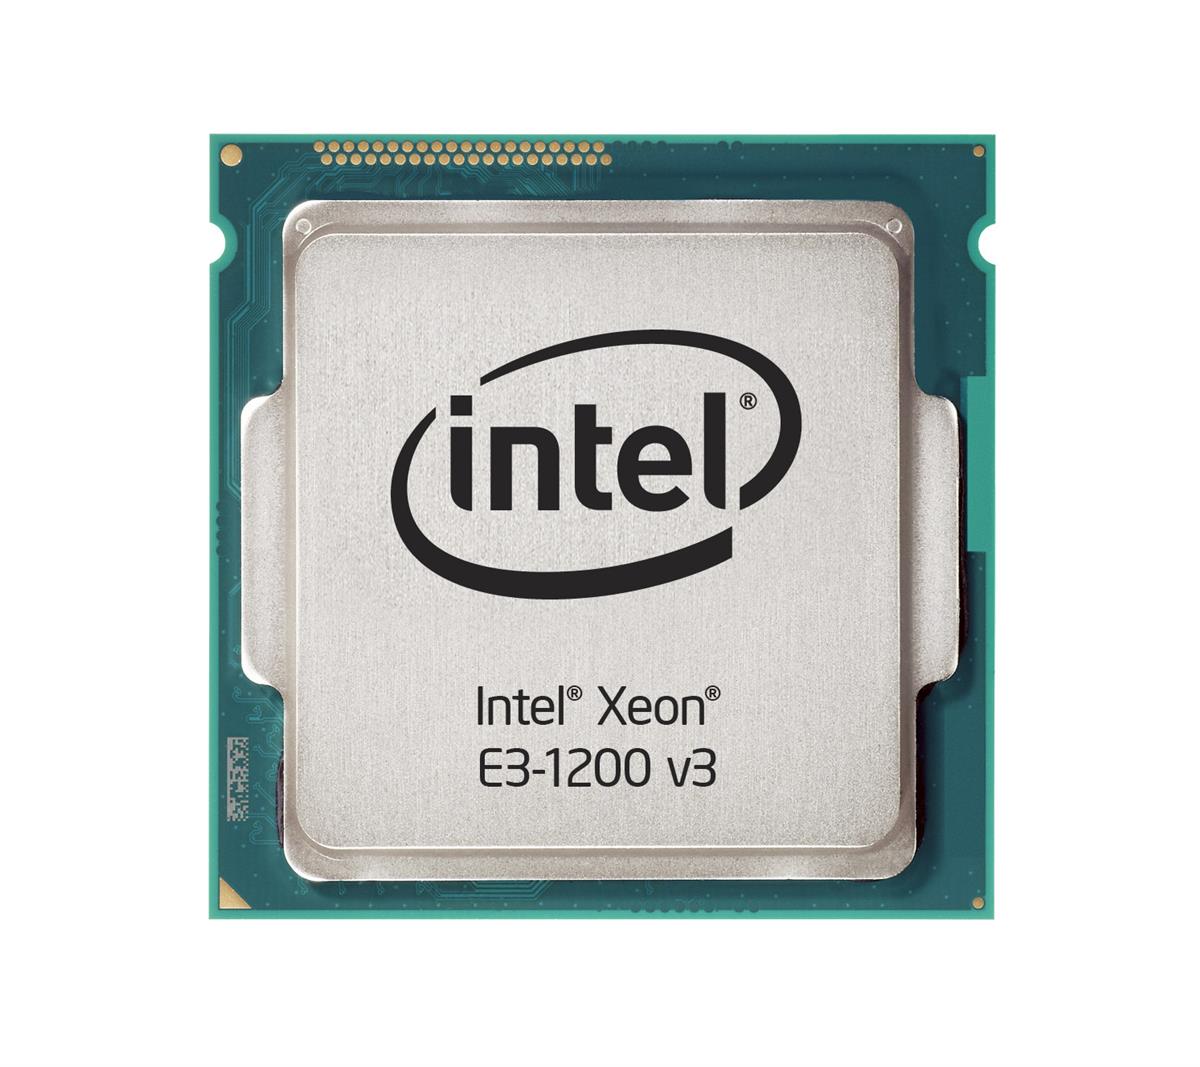 03T6760 Lenovo 3.40GHz 5.00GT/s DMI 8MB L3 Cache Intel Xeon E3-1245 v3 Quad Core Processor Upgrade